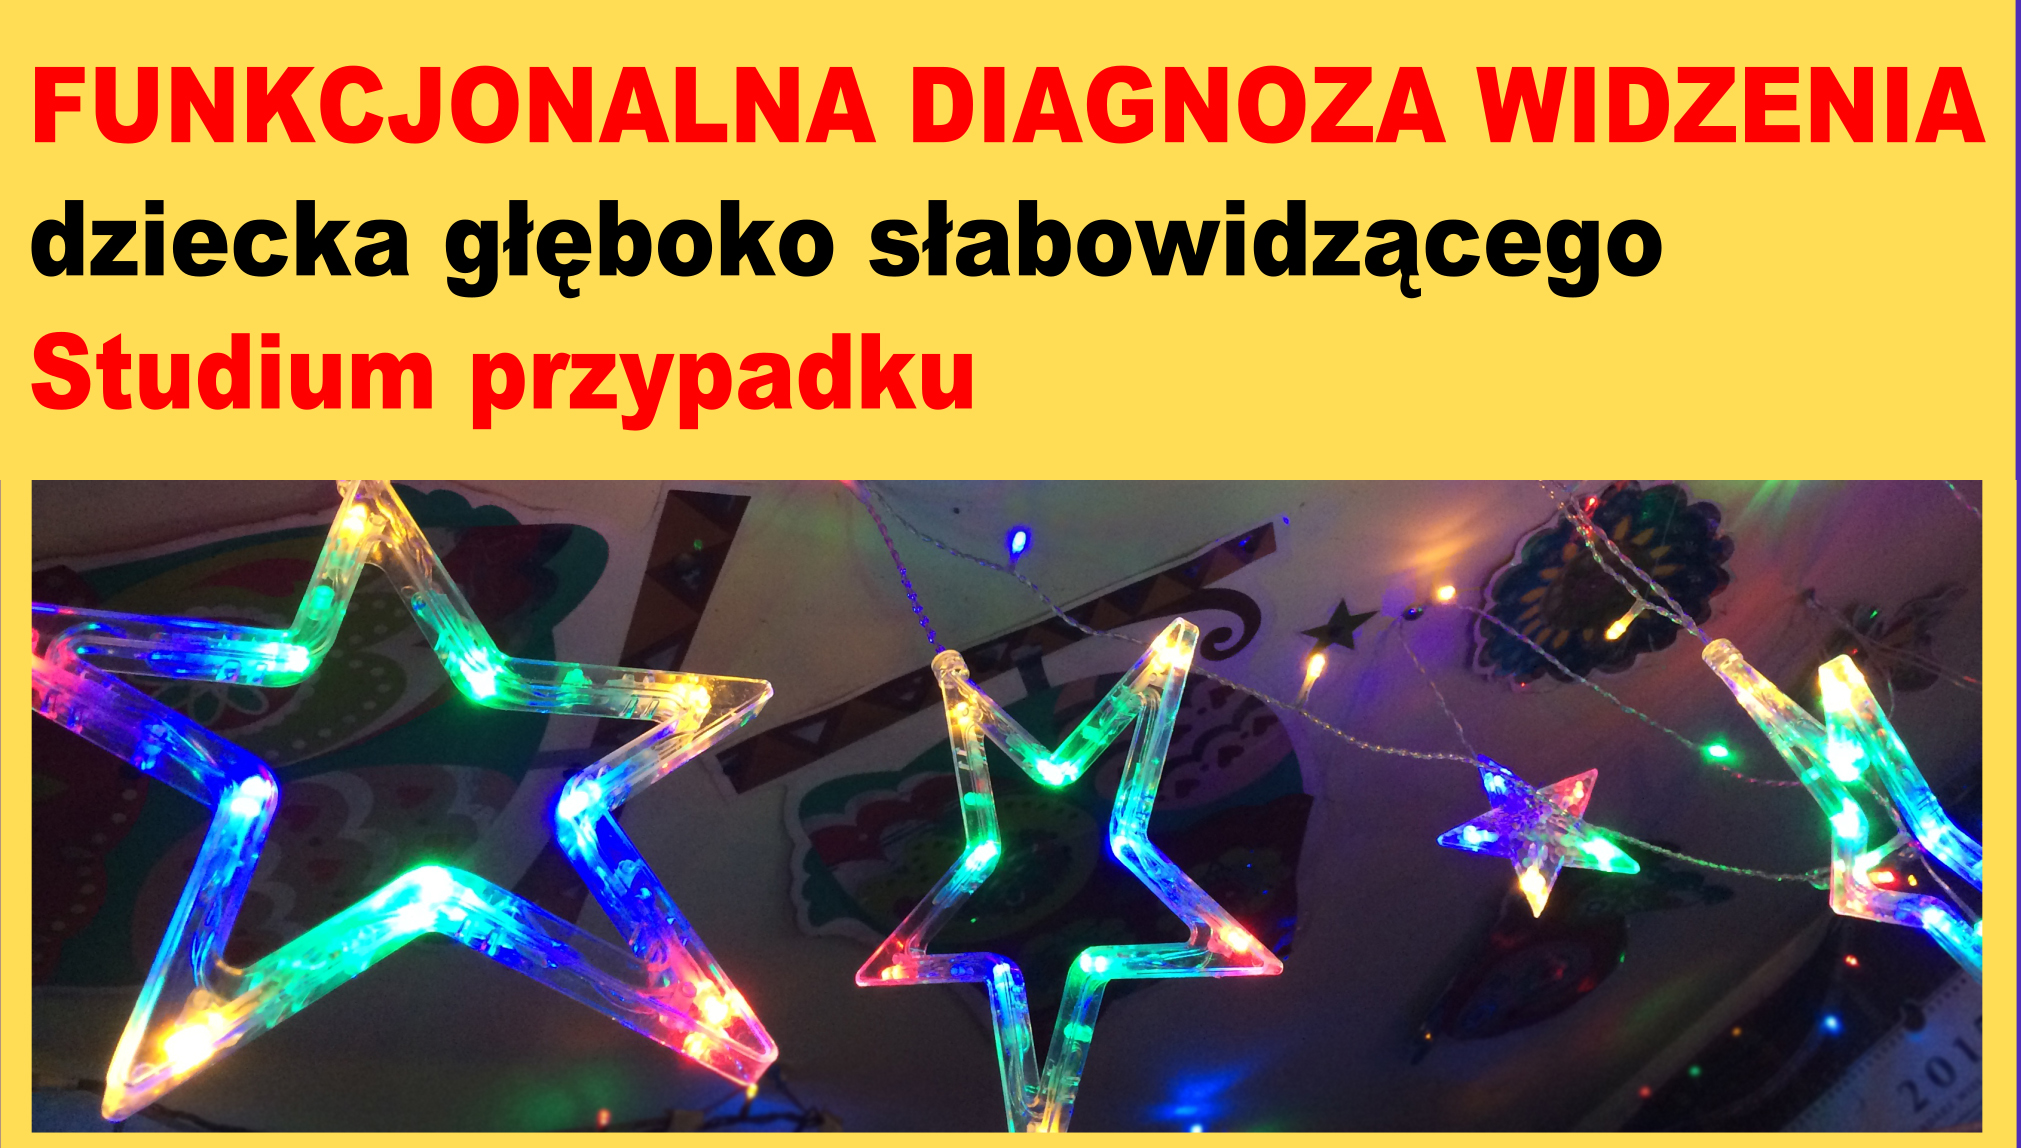 http://mamotatopokazmi.pl/index.php/funkcjonalna-diagnoza-widzenia-dziecka-gleboko-slabowidzacego-studium-przypadku